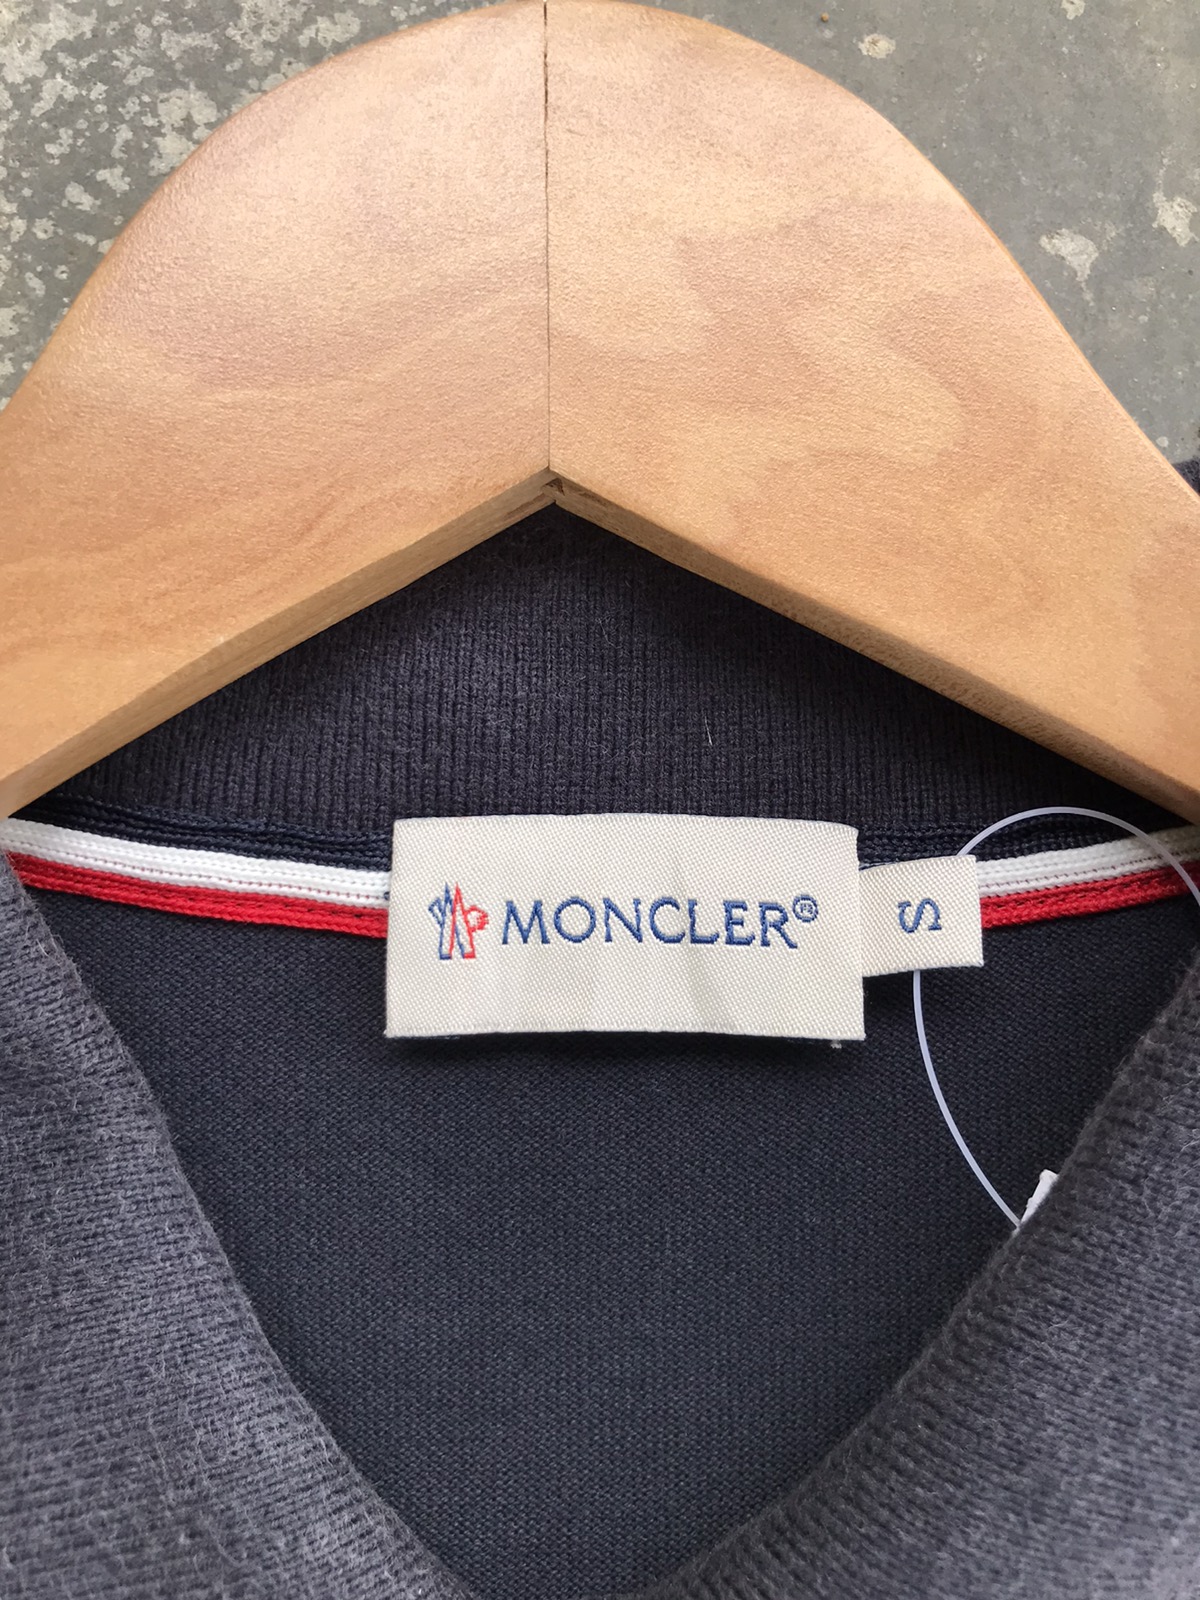 Moncler Polo Shirt - 4